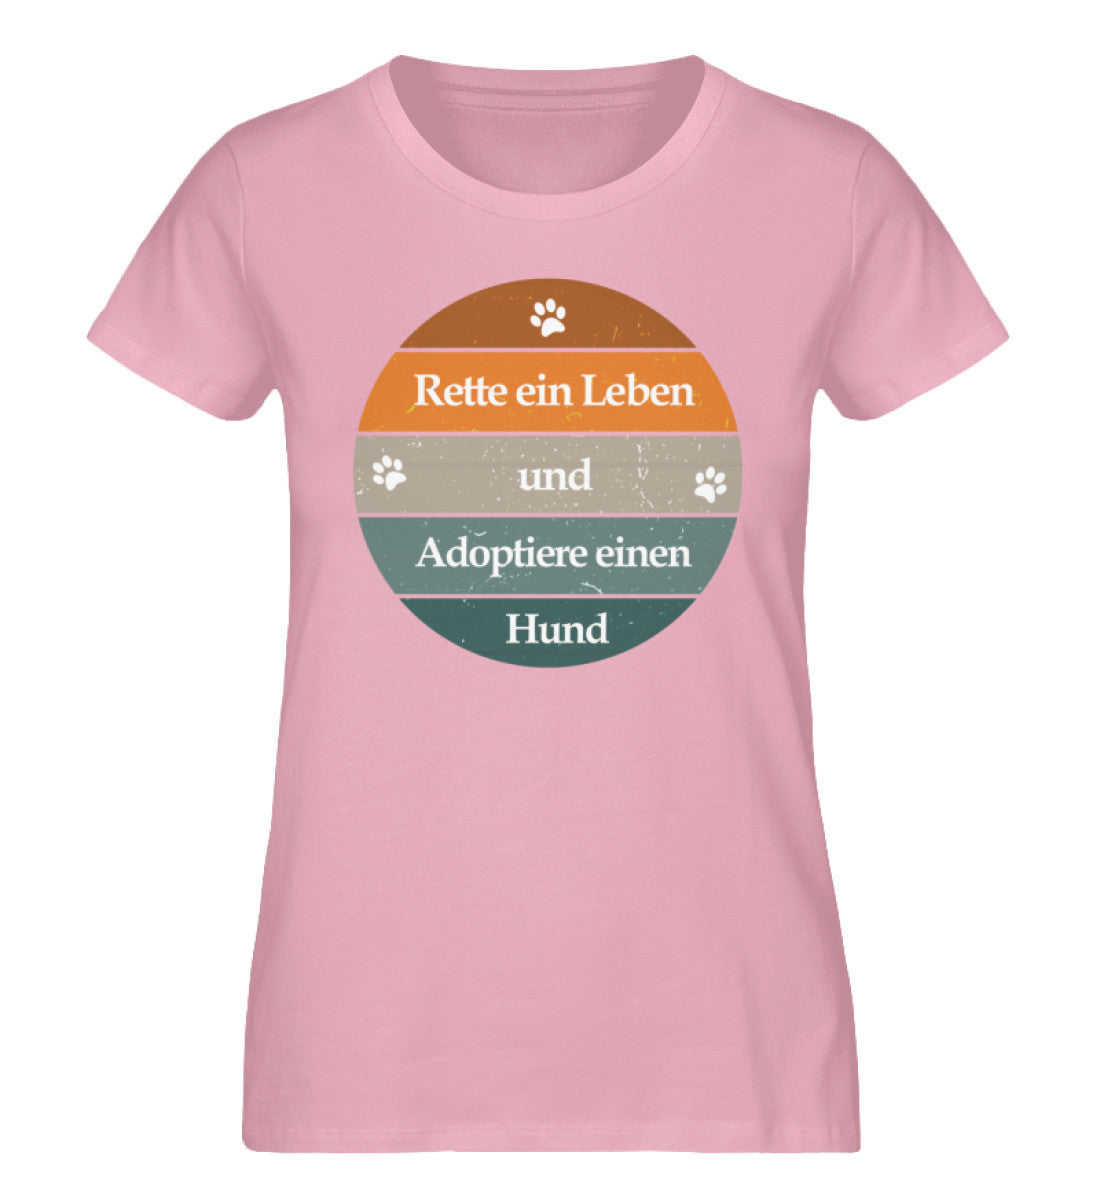 Rette ein Leben Damen T-Shirt in Cotton Pink